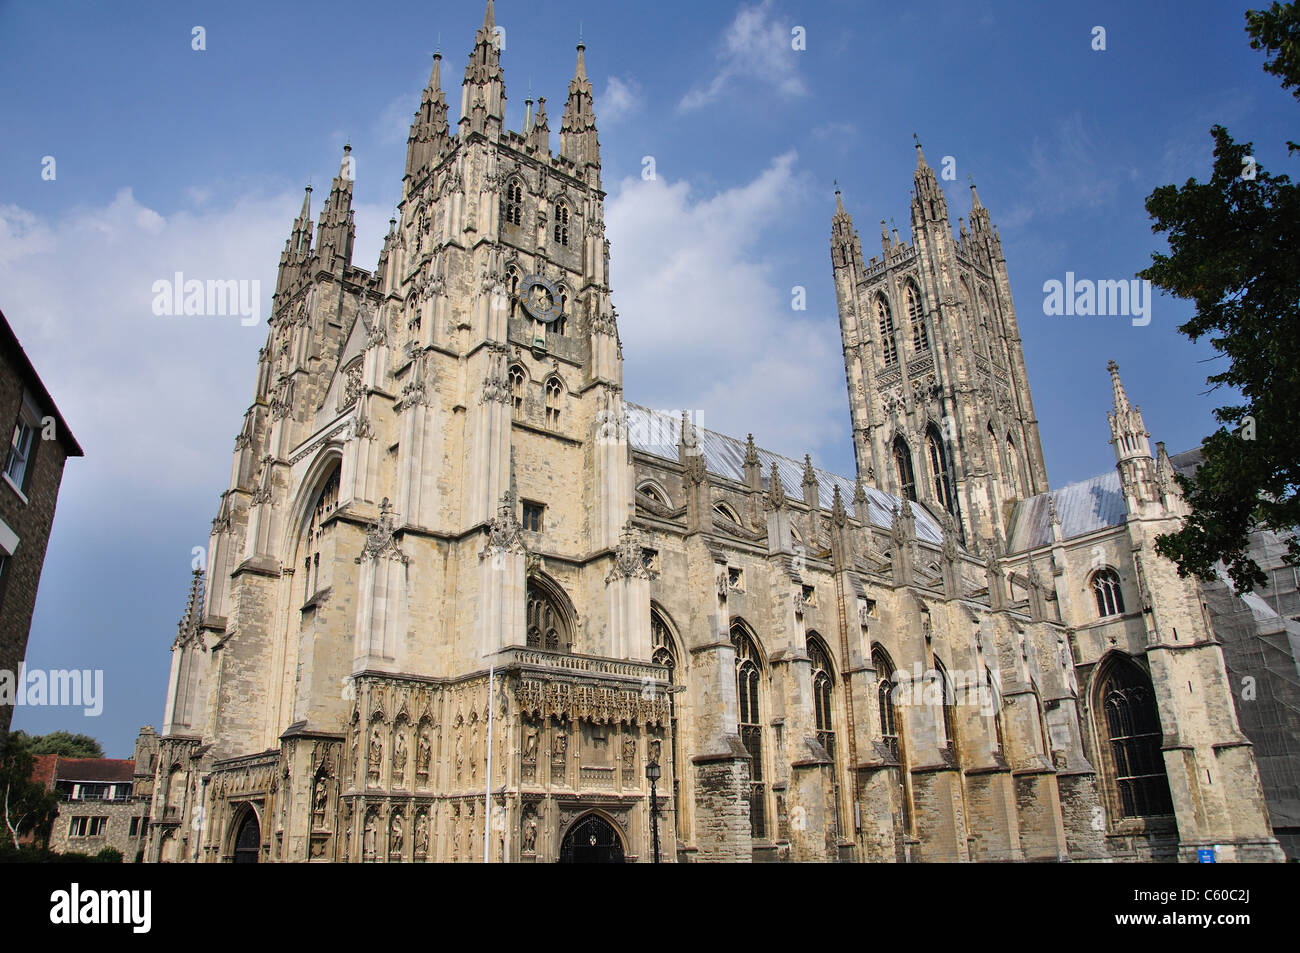 La Cathédrale de Canterbury, Canterbury, ville de Canterbury, Kent, England, United Kingdom Banque D'Images